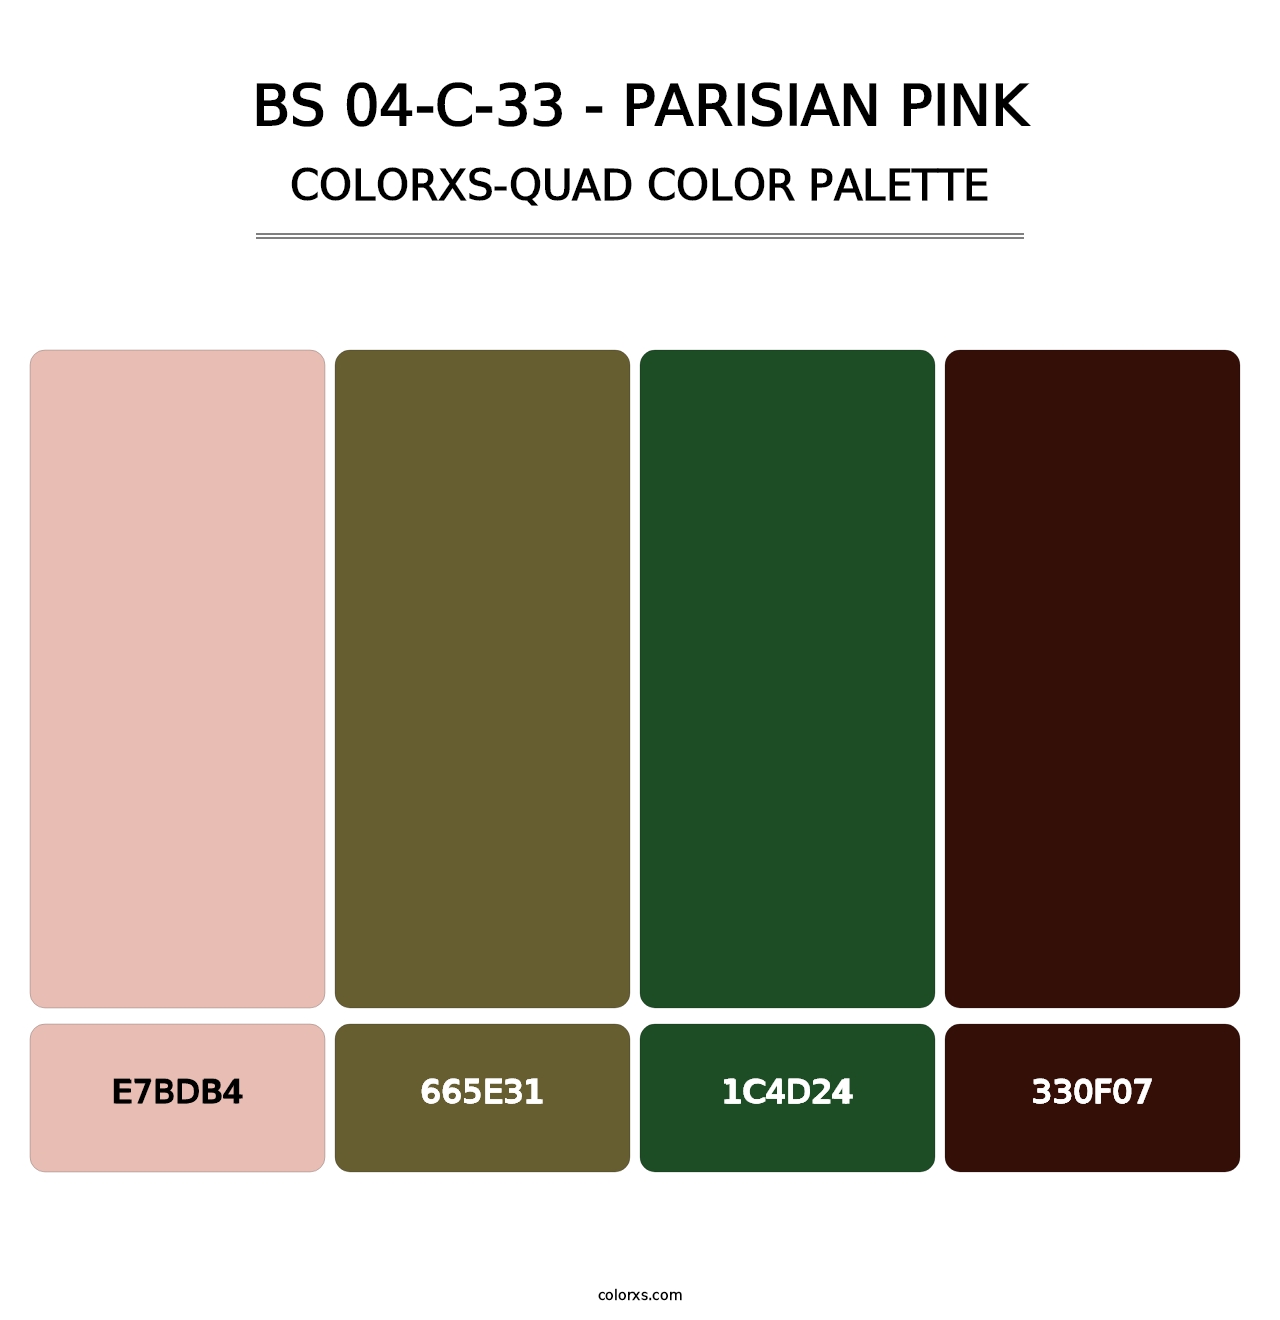 BS 04-C-33 - Parisian Pink - Colorxs Quad Palette